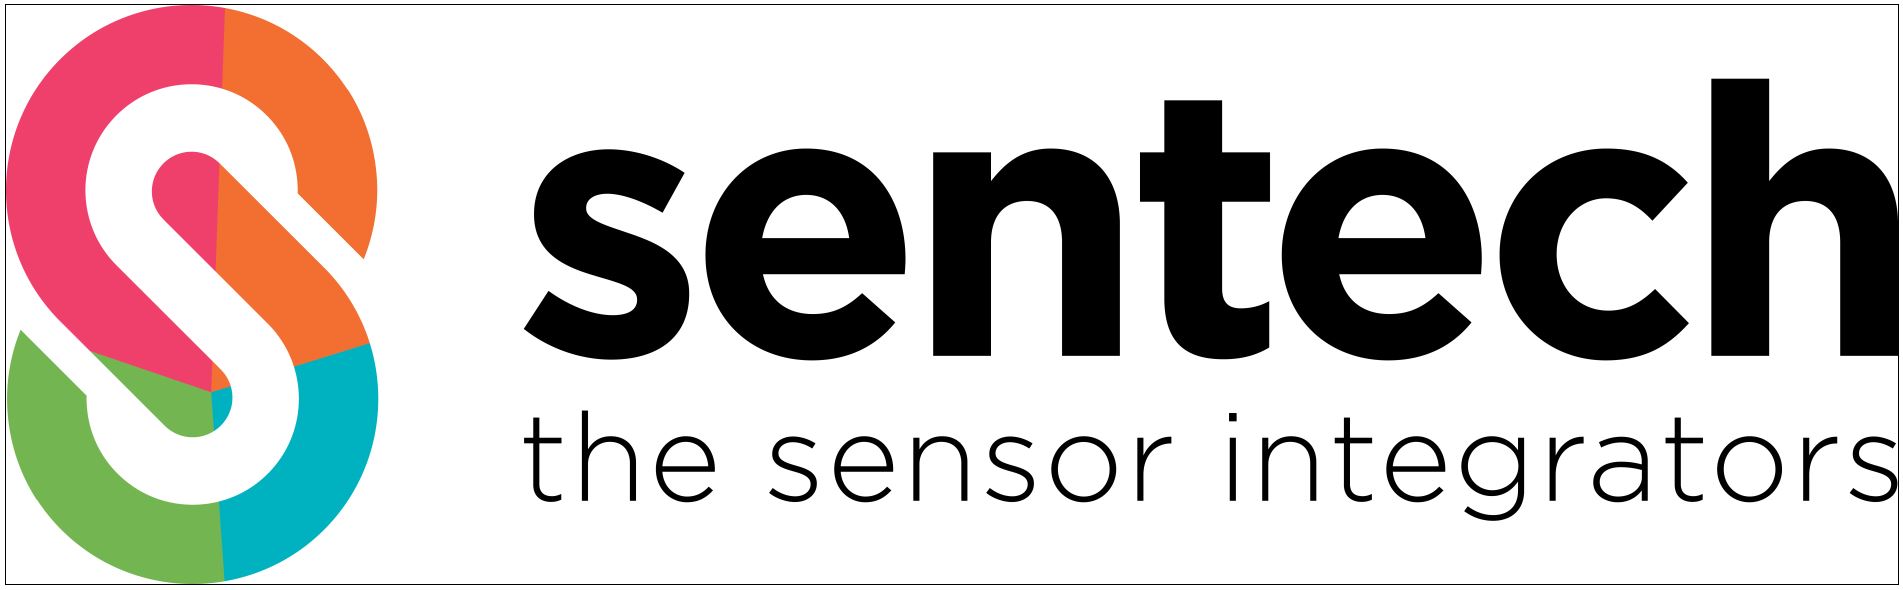 the sensor integrators